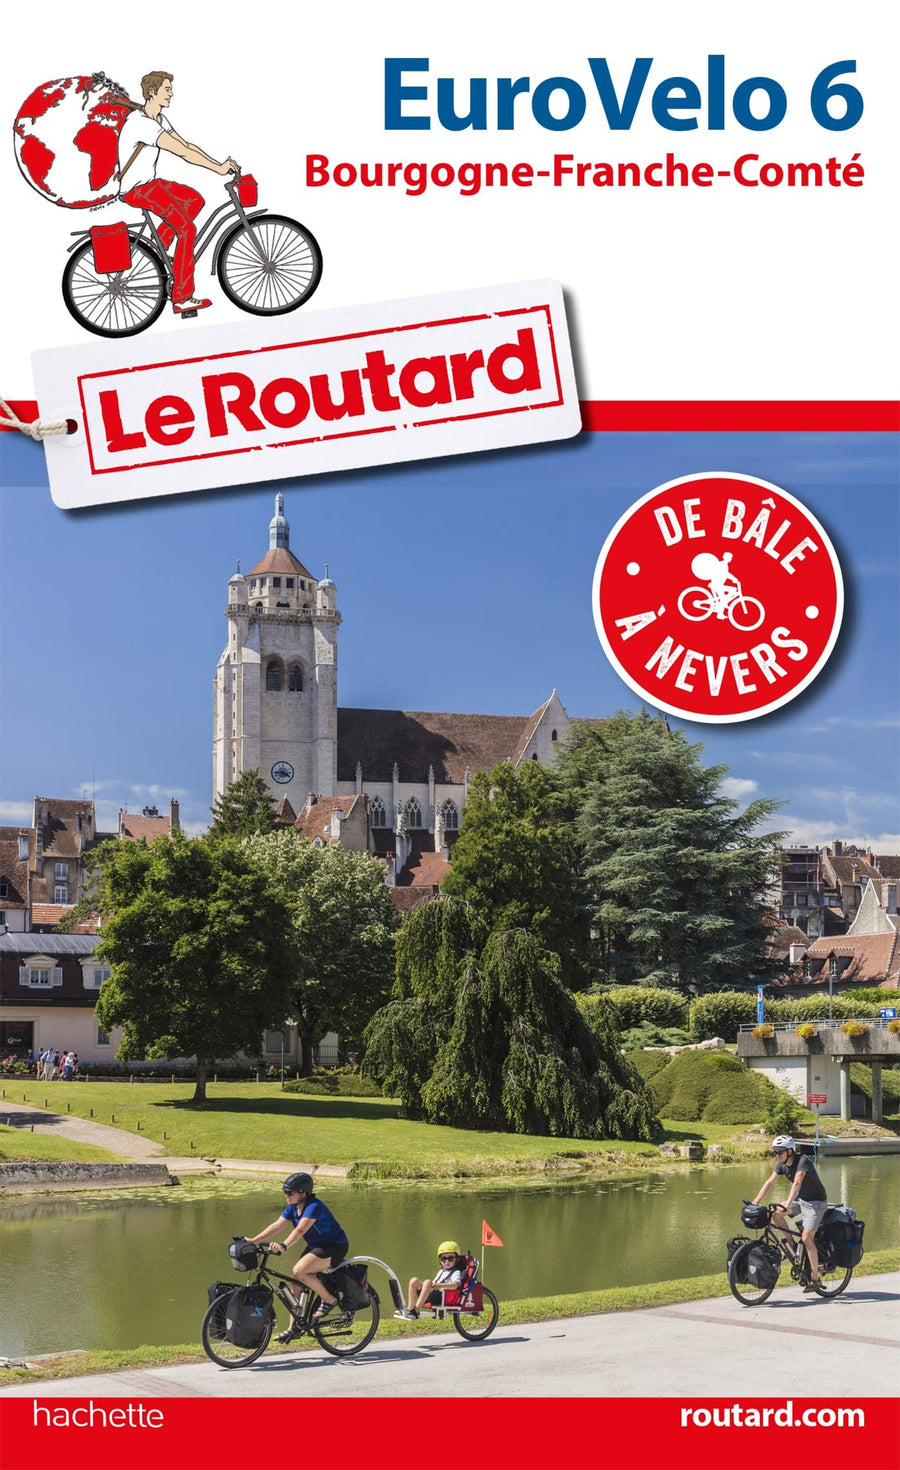 Guide du Routard - Euro Vélo 6, de Bâle à Nevers | Hachette guide de voyage Hachette 